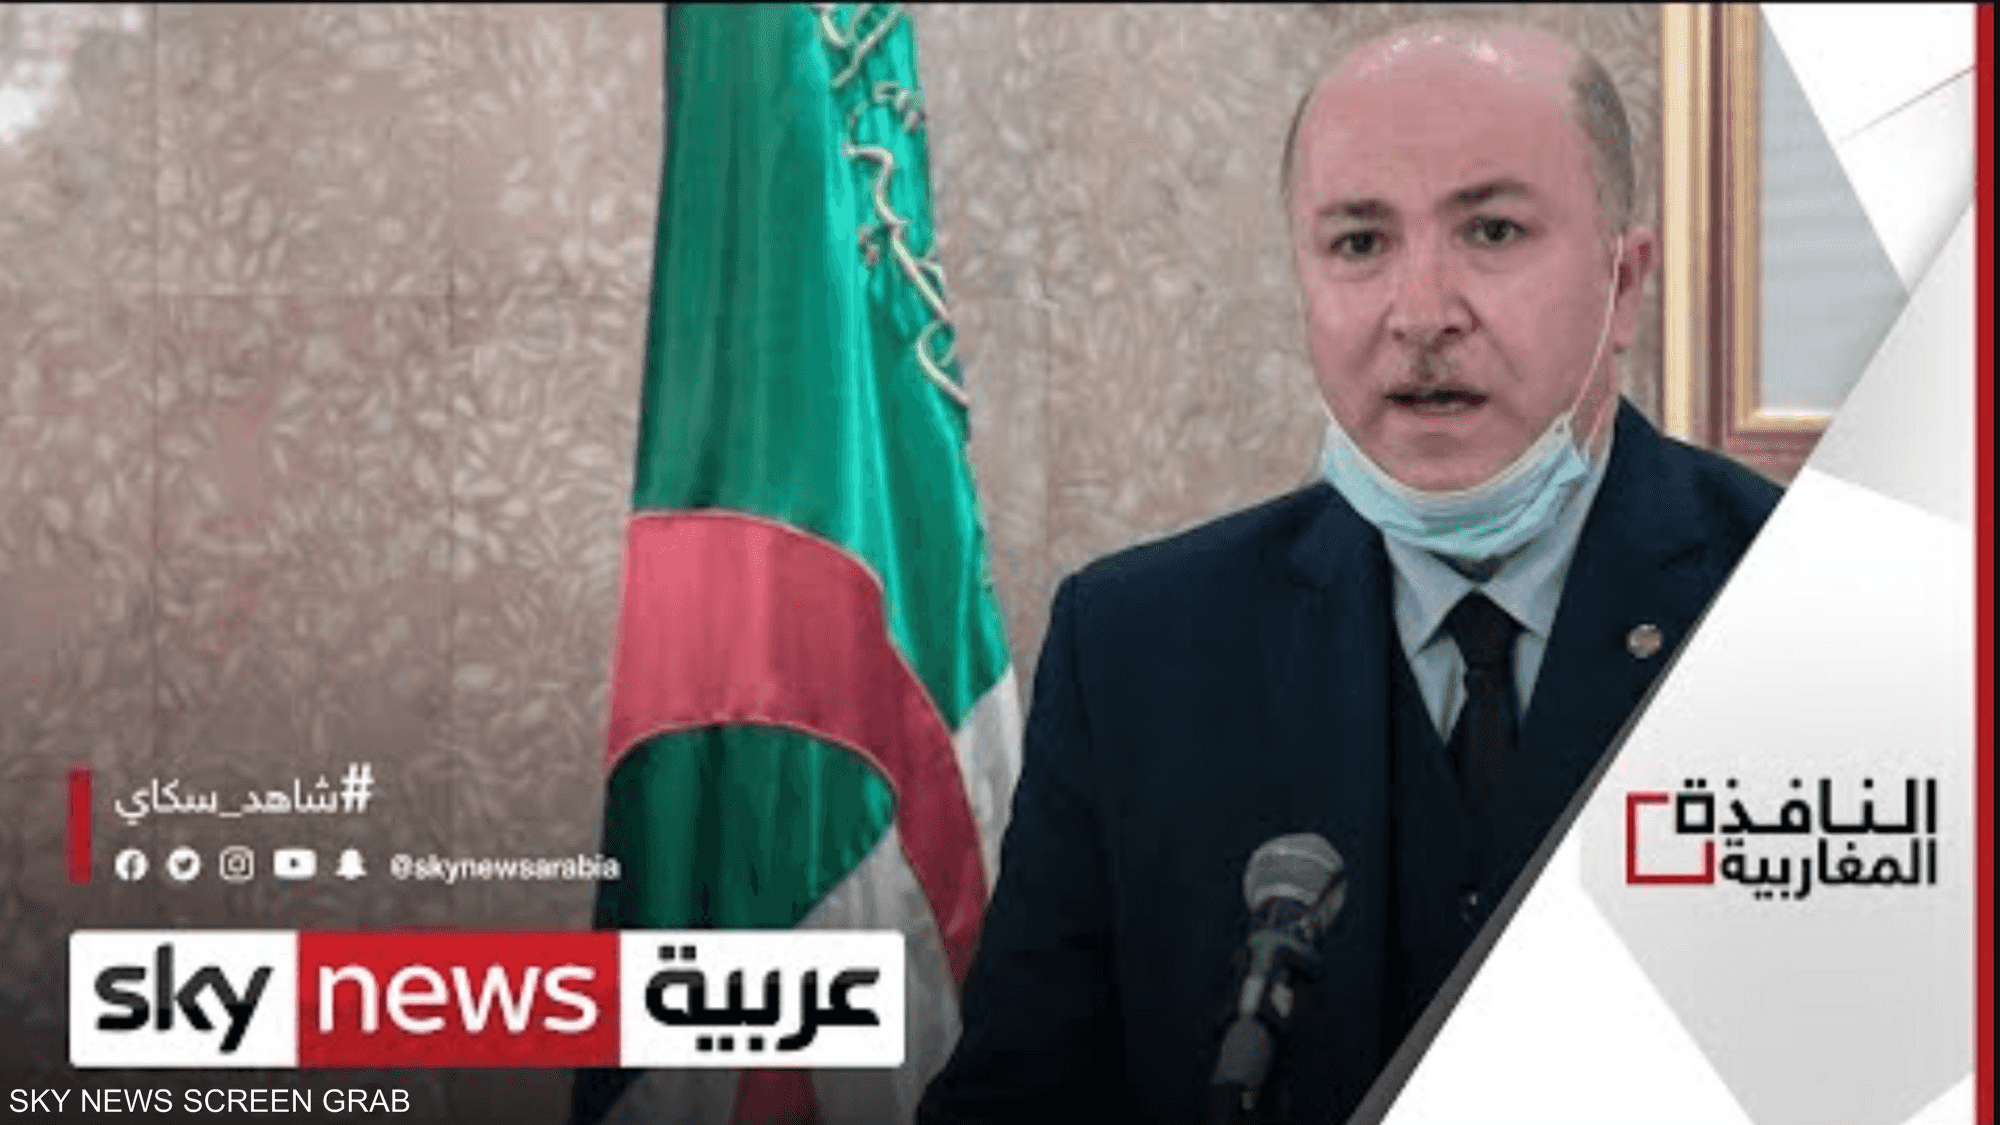 انقسام الشارع حول طبيعة الحكومة الجزائرية المنتظرة